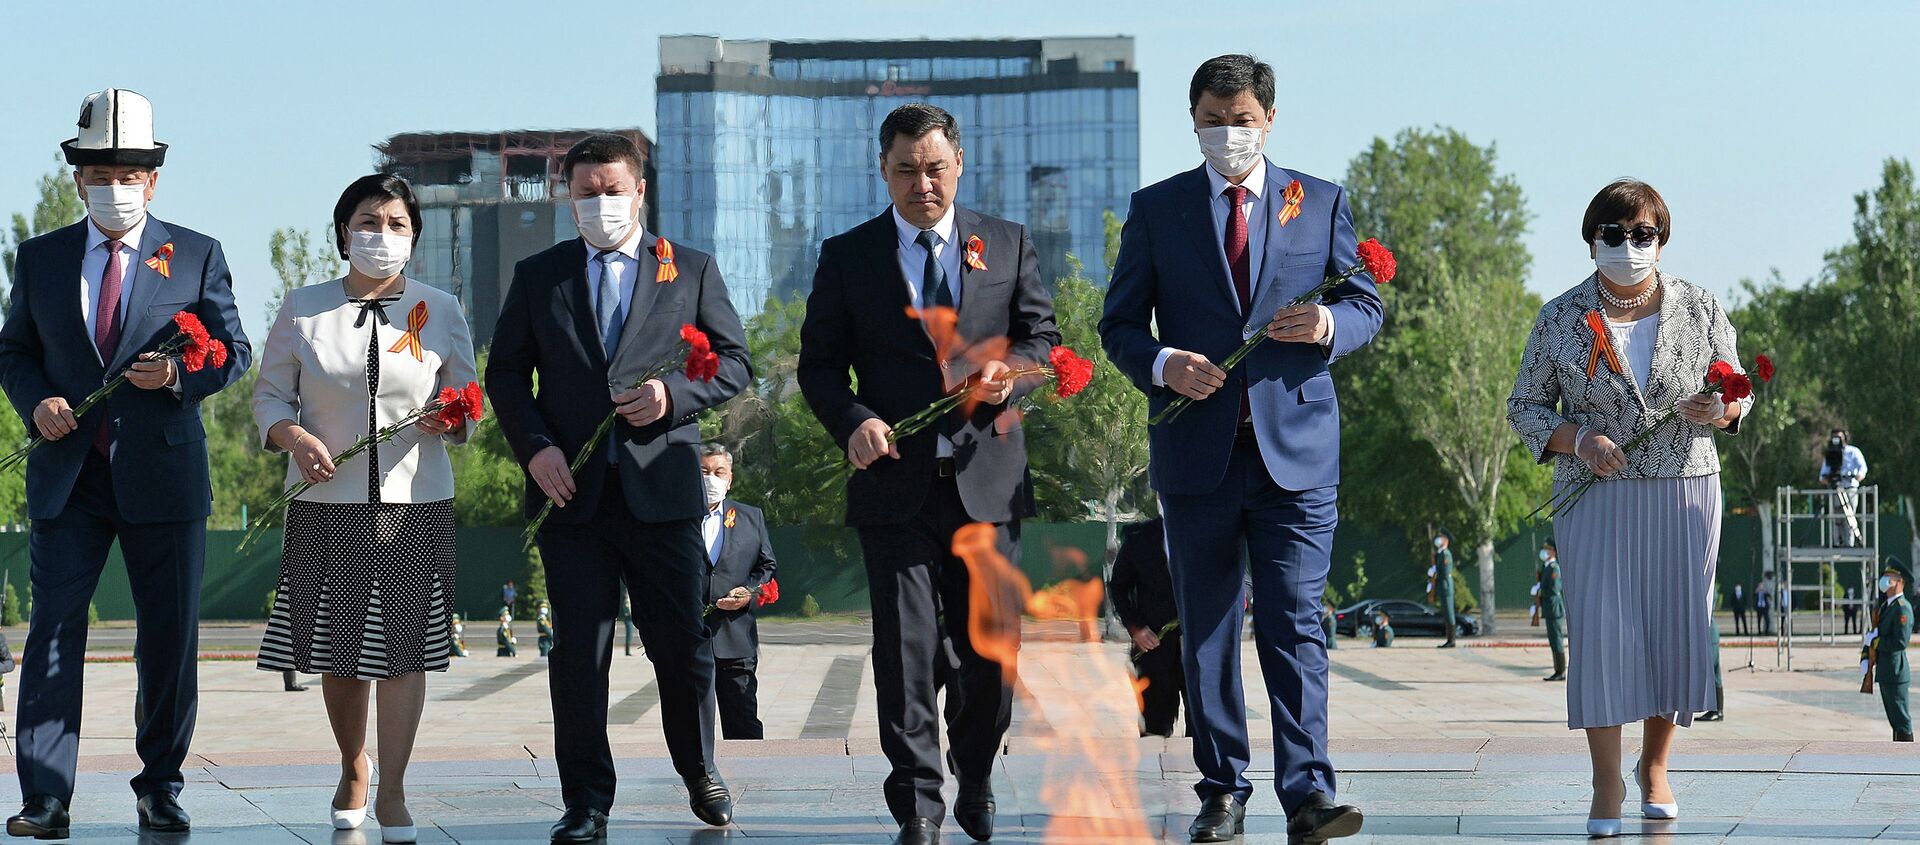 Митинг-реквием по случаю 76-й годовщины Победы в ВОВ на площади Победы в Бишкеке - Sputnik Кыргызстан, 1920, 09.05.2021